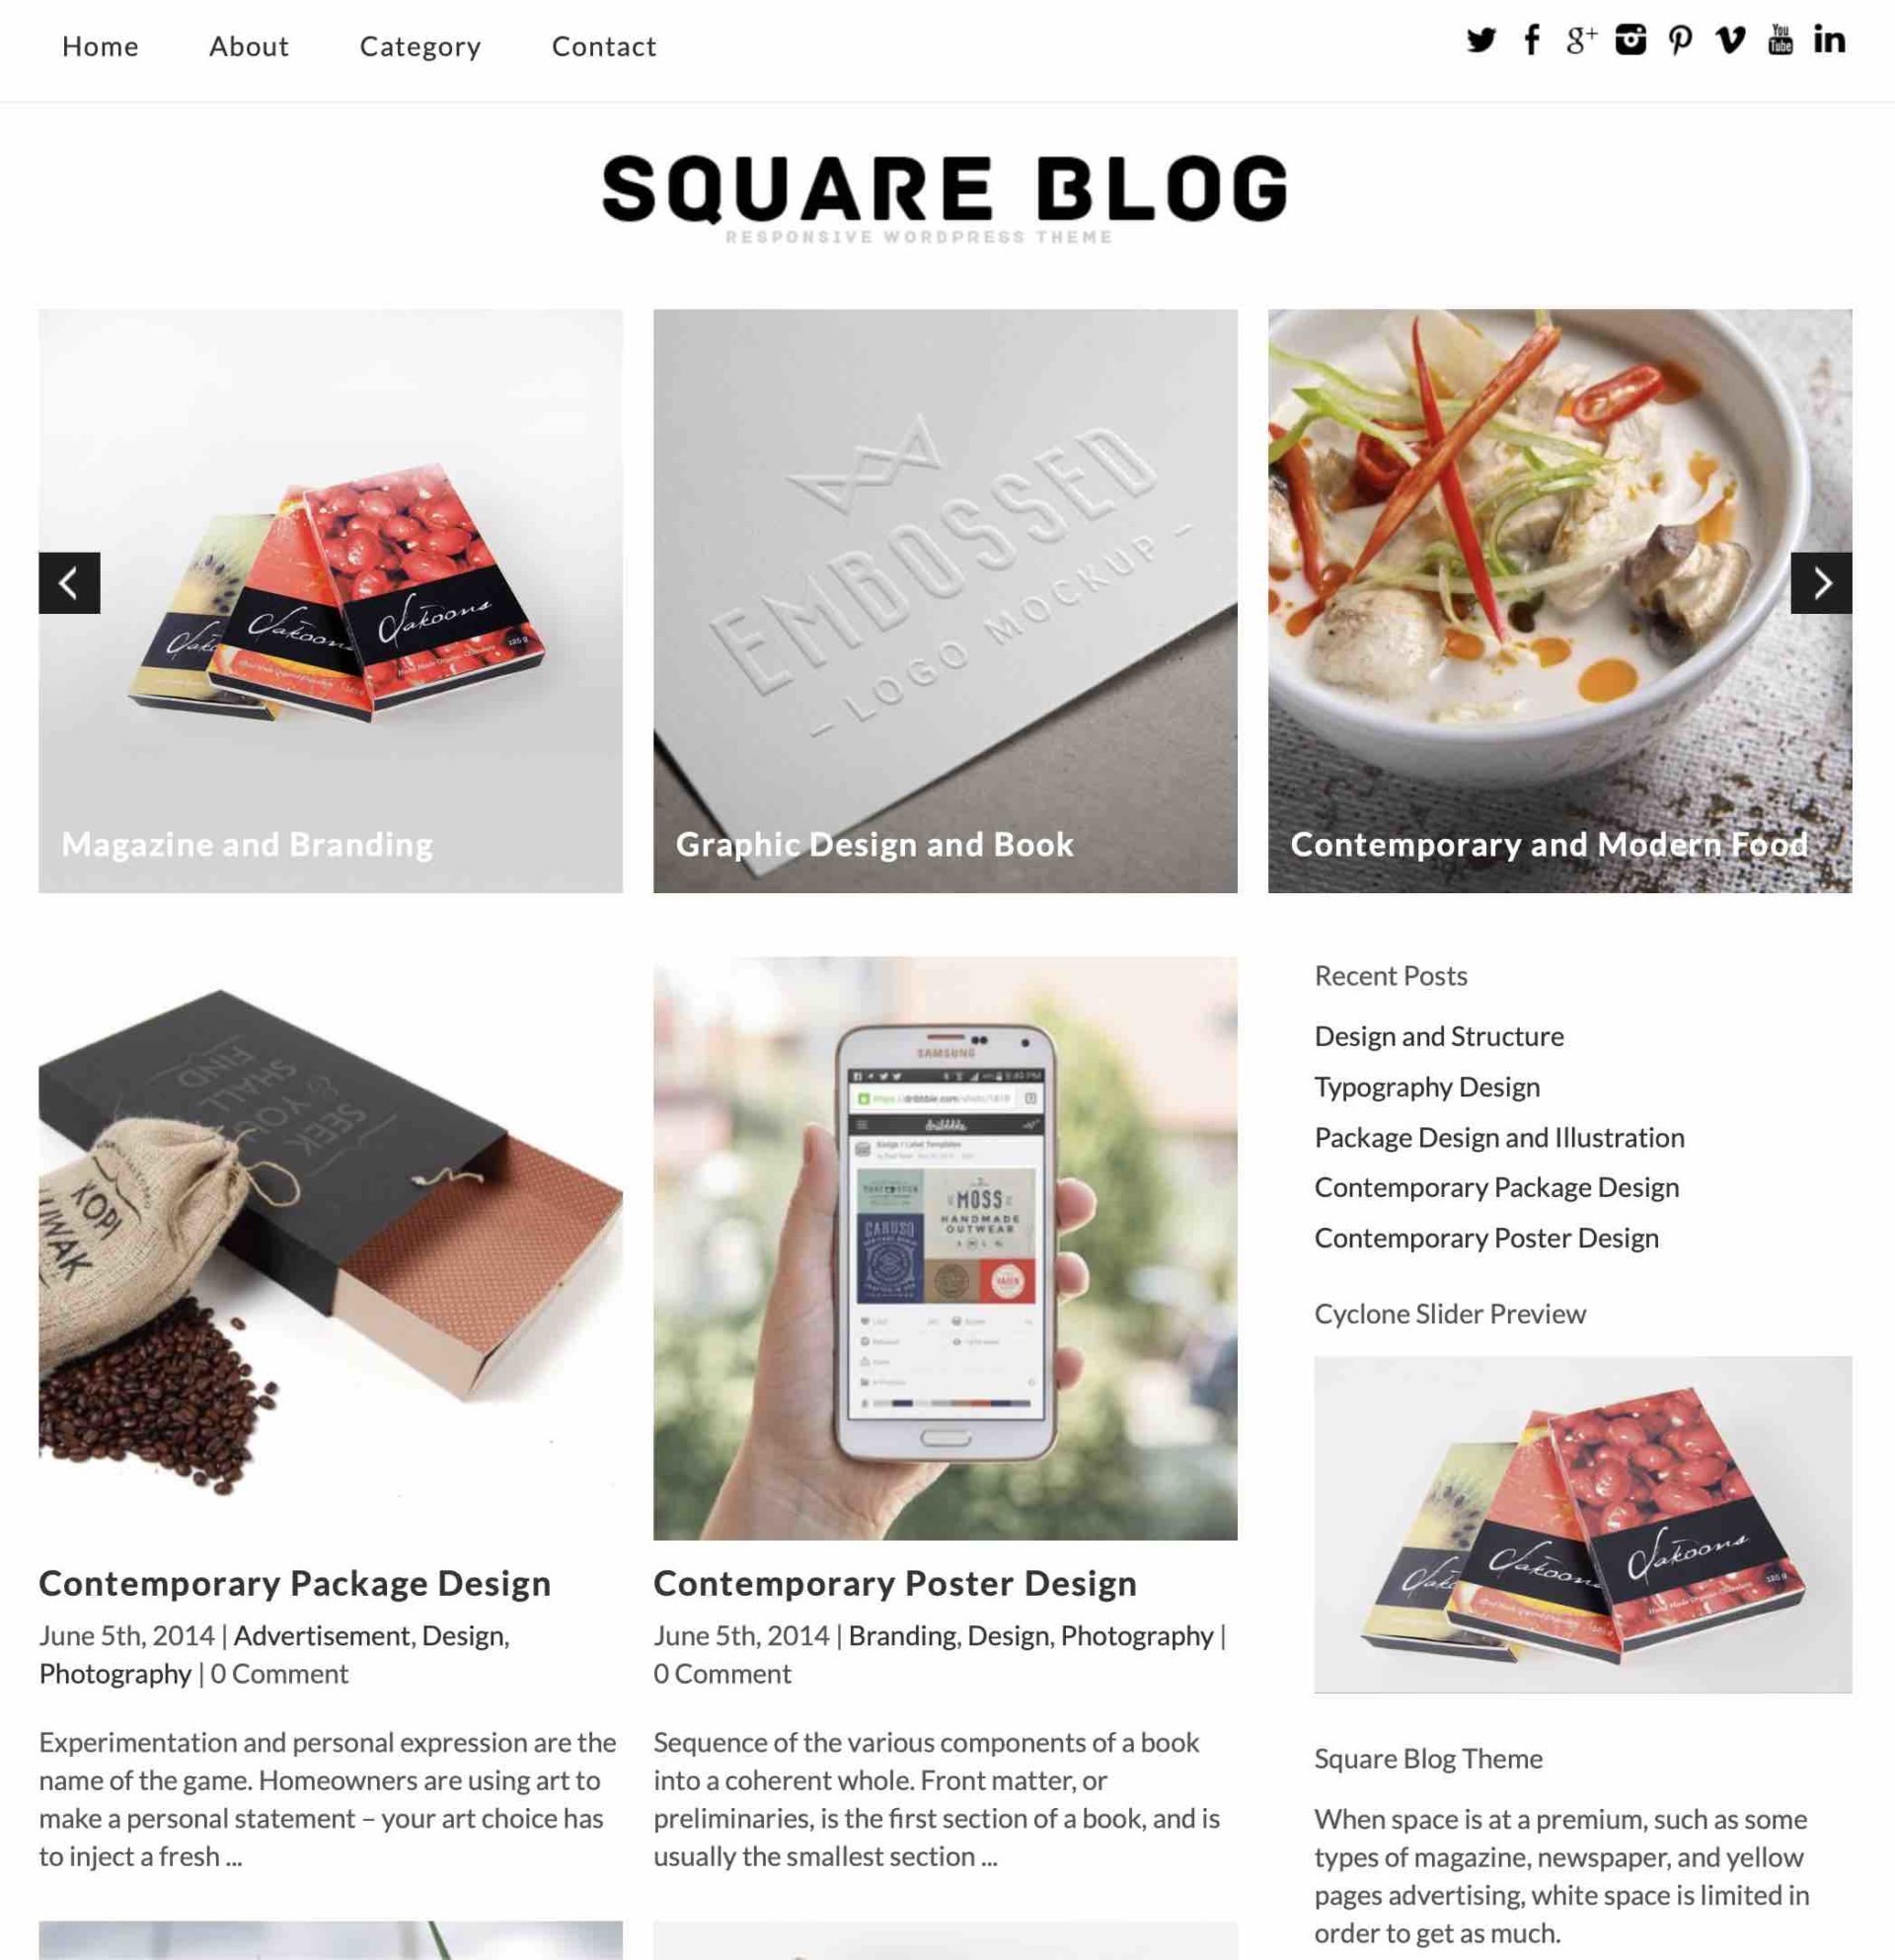 Square Blog Theme